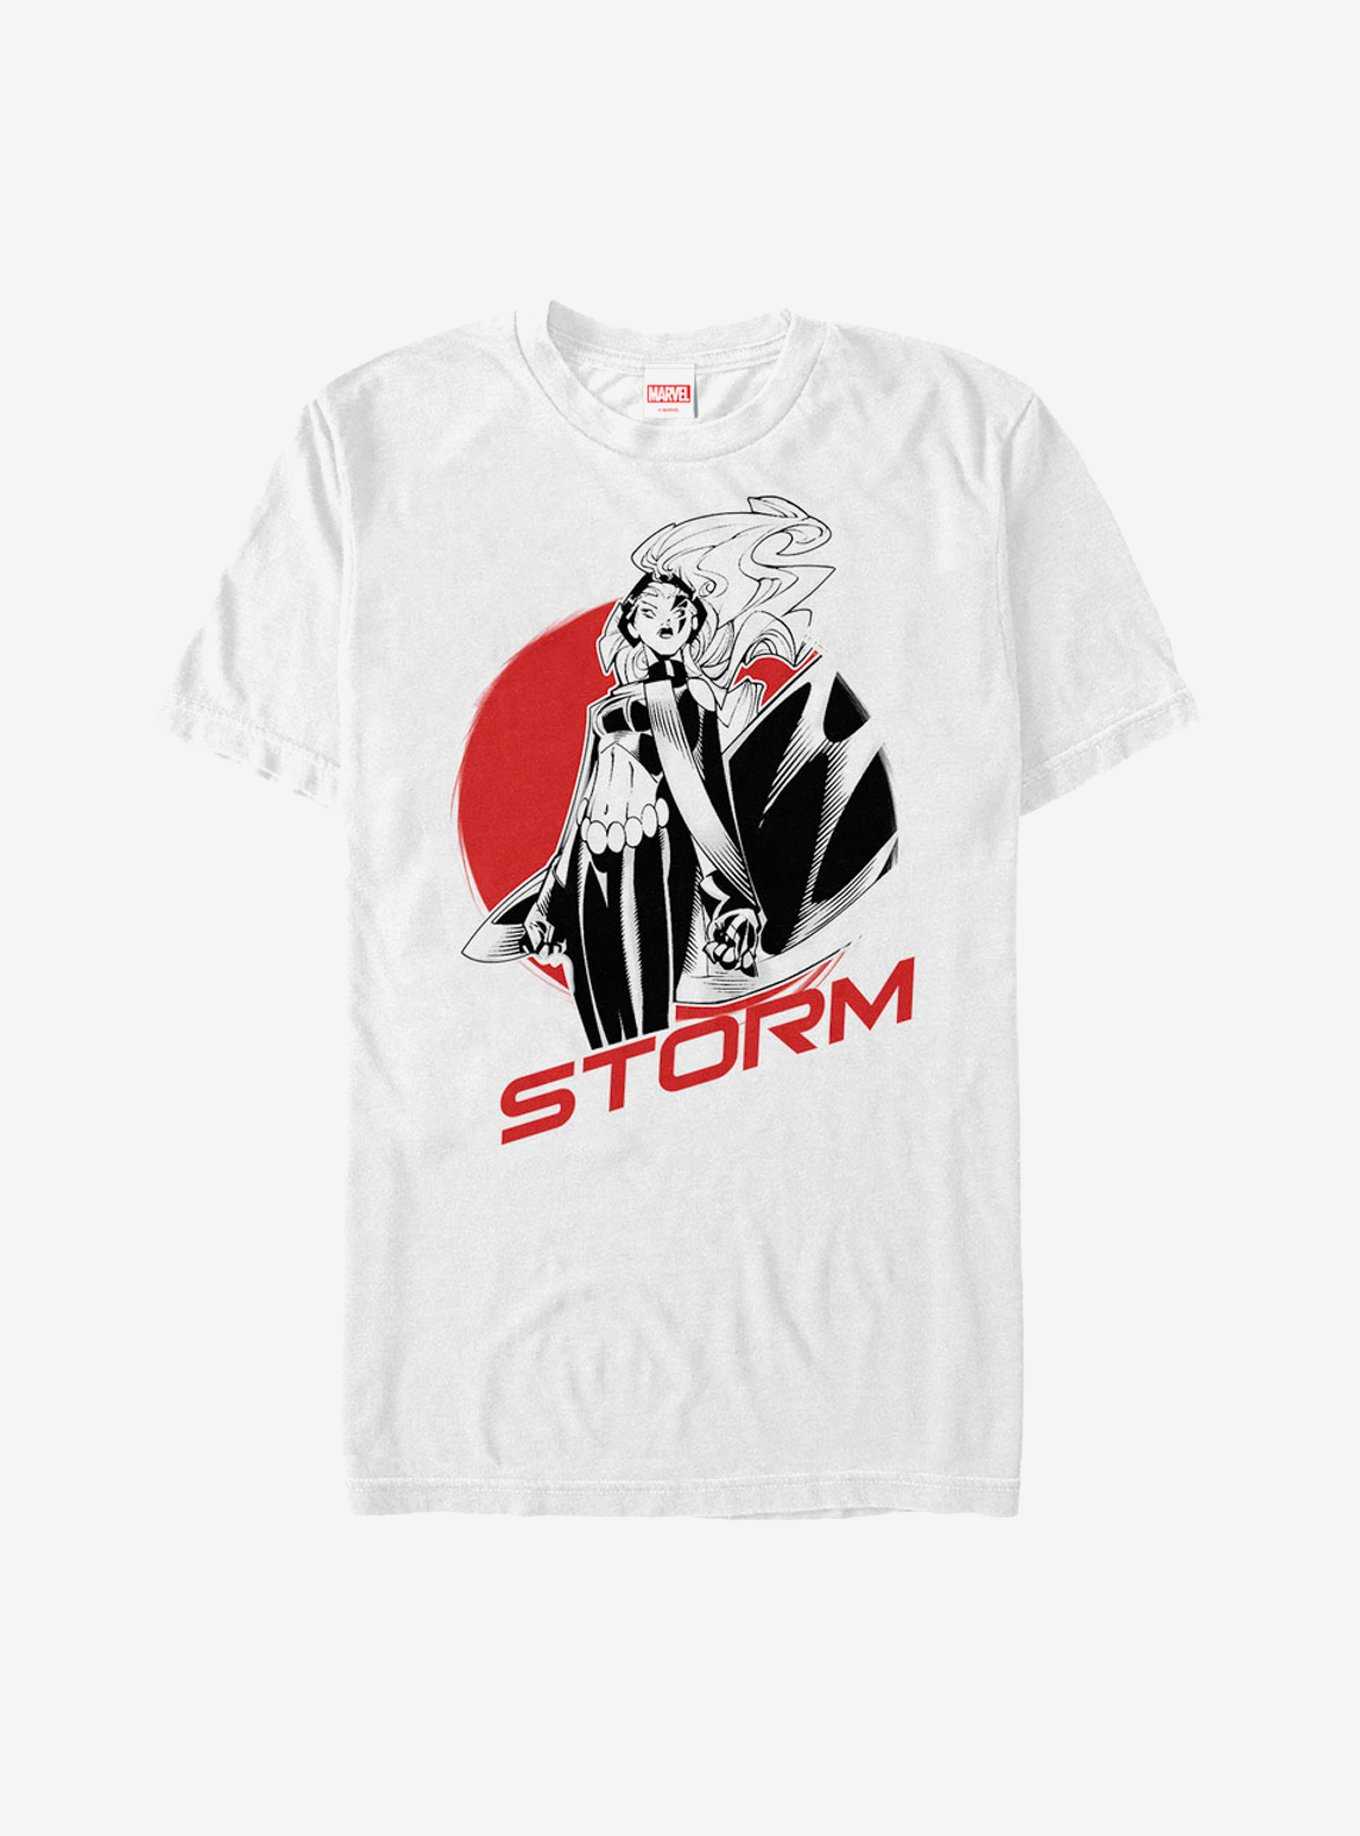 Marvel X-Men Storm Badge T-Shirt, , hi-res